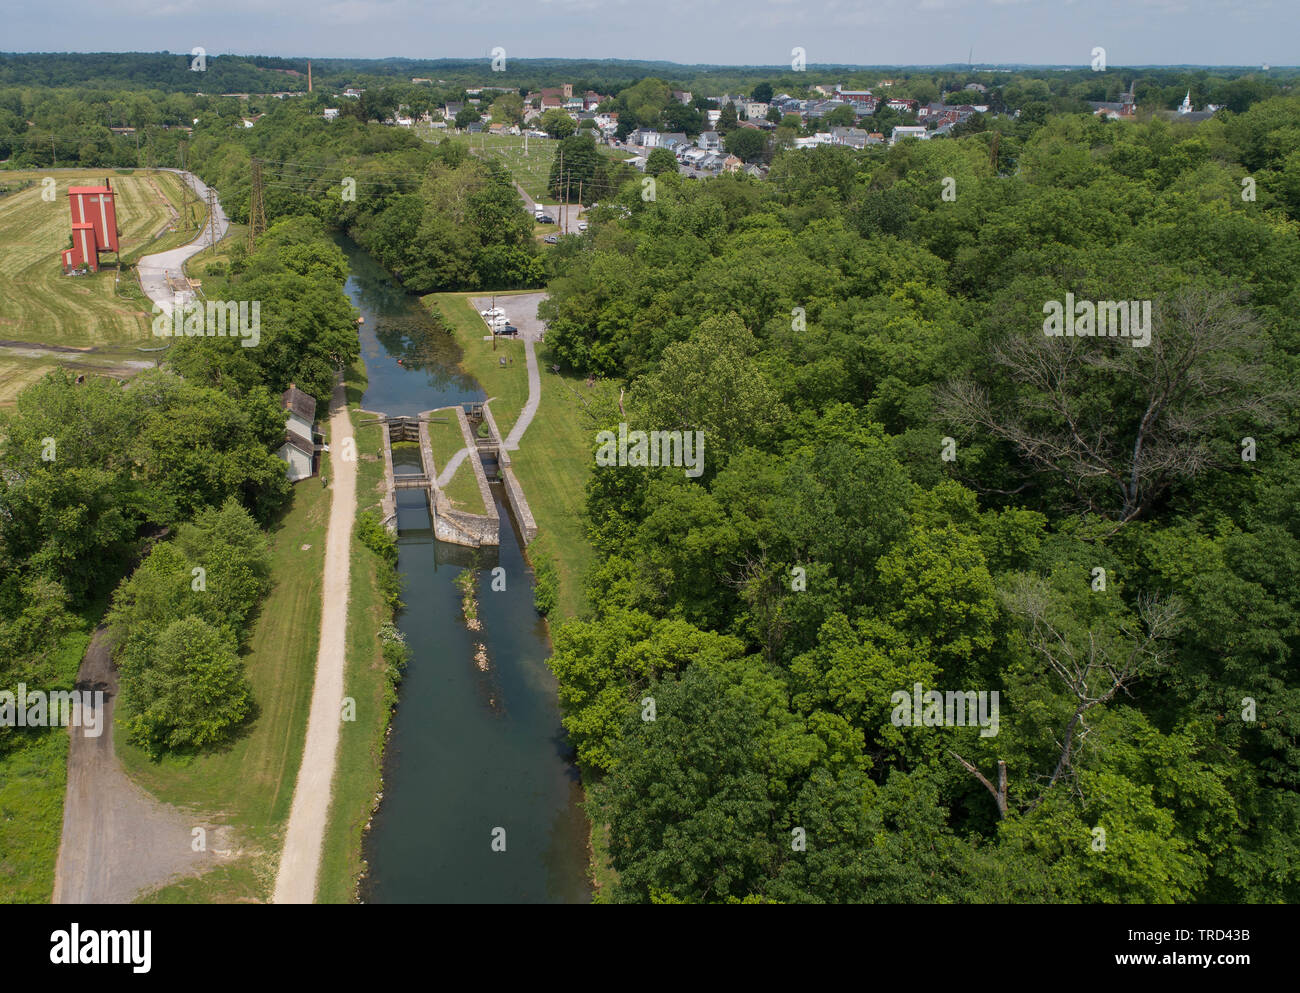 Pintoresca Vista aérea de alta mirando hacia abajo histórico Canal Chesapeake y Ohio y bloqueo de la estructura de la presa camino de sirga Trail National Historical Park Maryland, EE.UU. Foto de stock